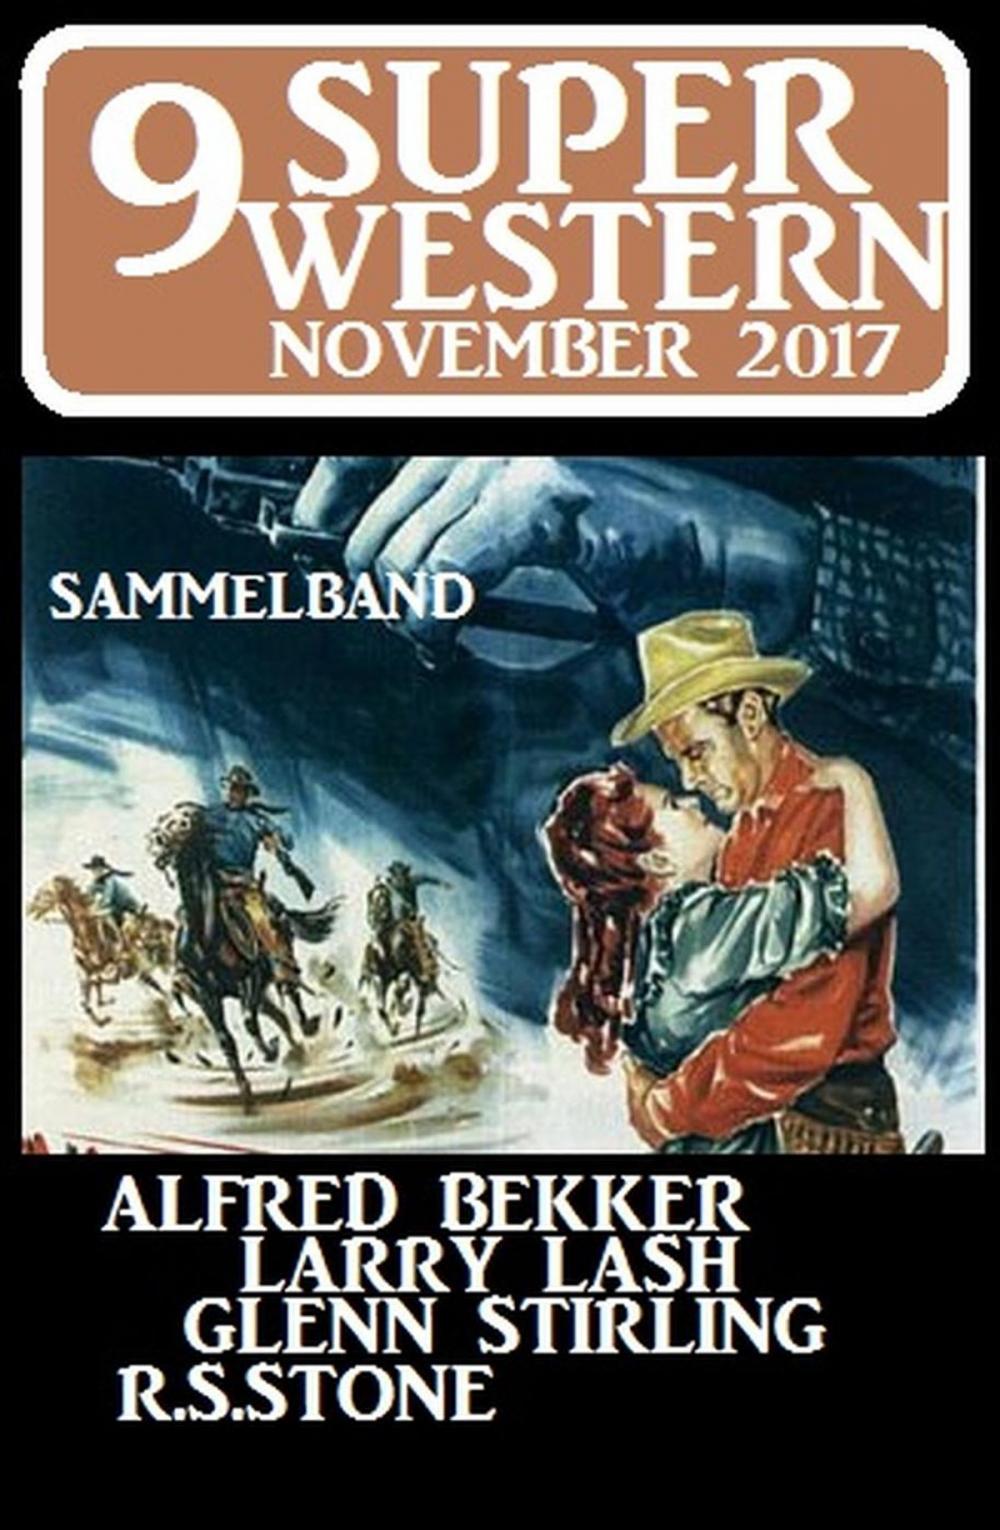 Big bigCover of 9 Super Western November 2017 - Sammelband